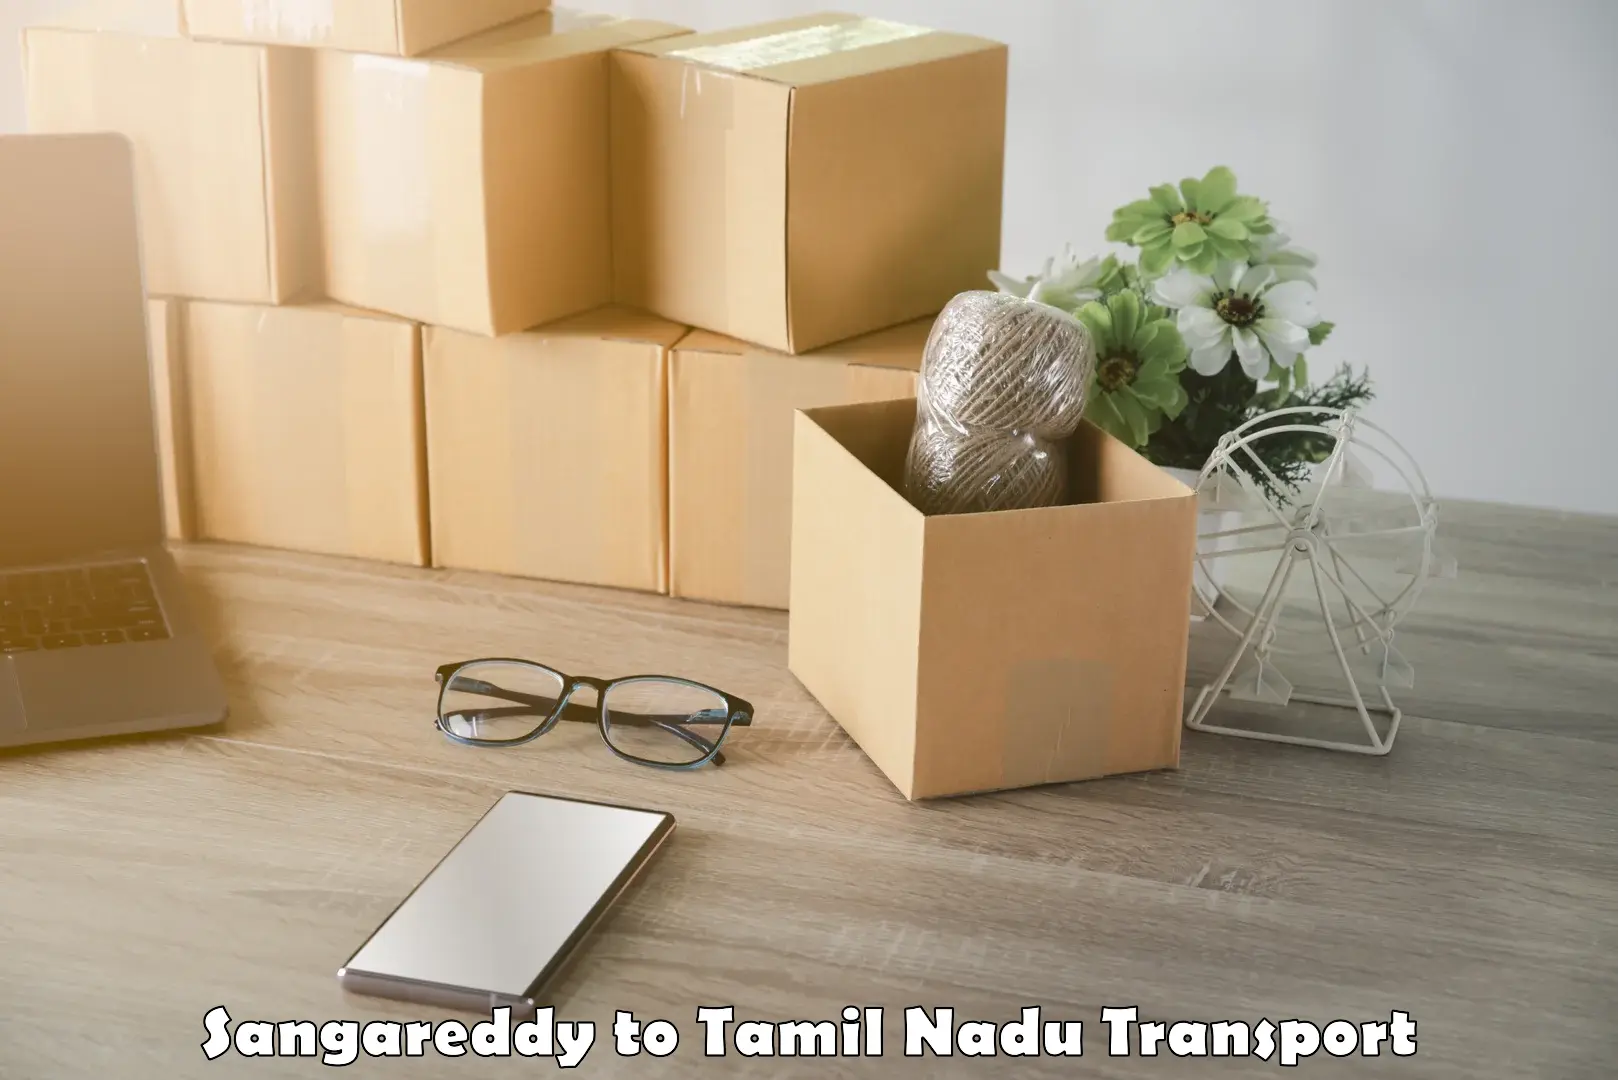 Delivery service Sangareddy to Villupuram